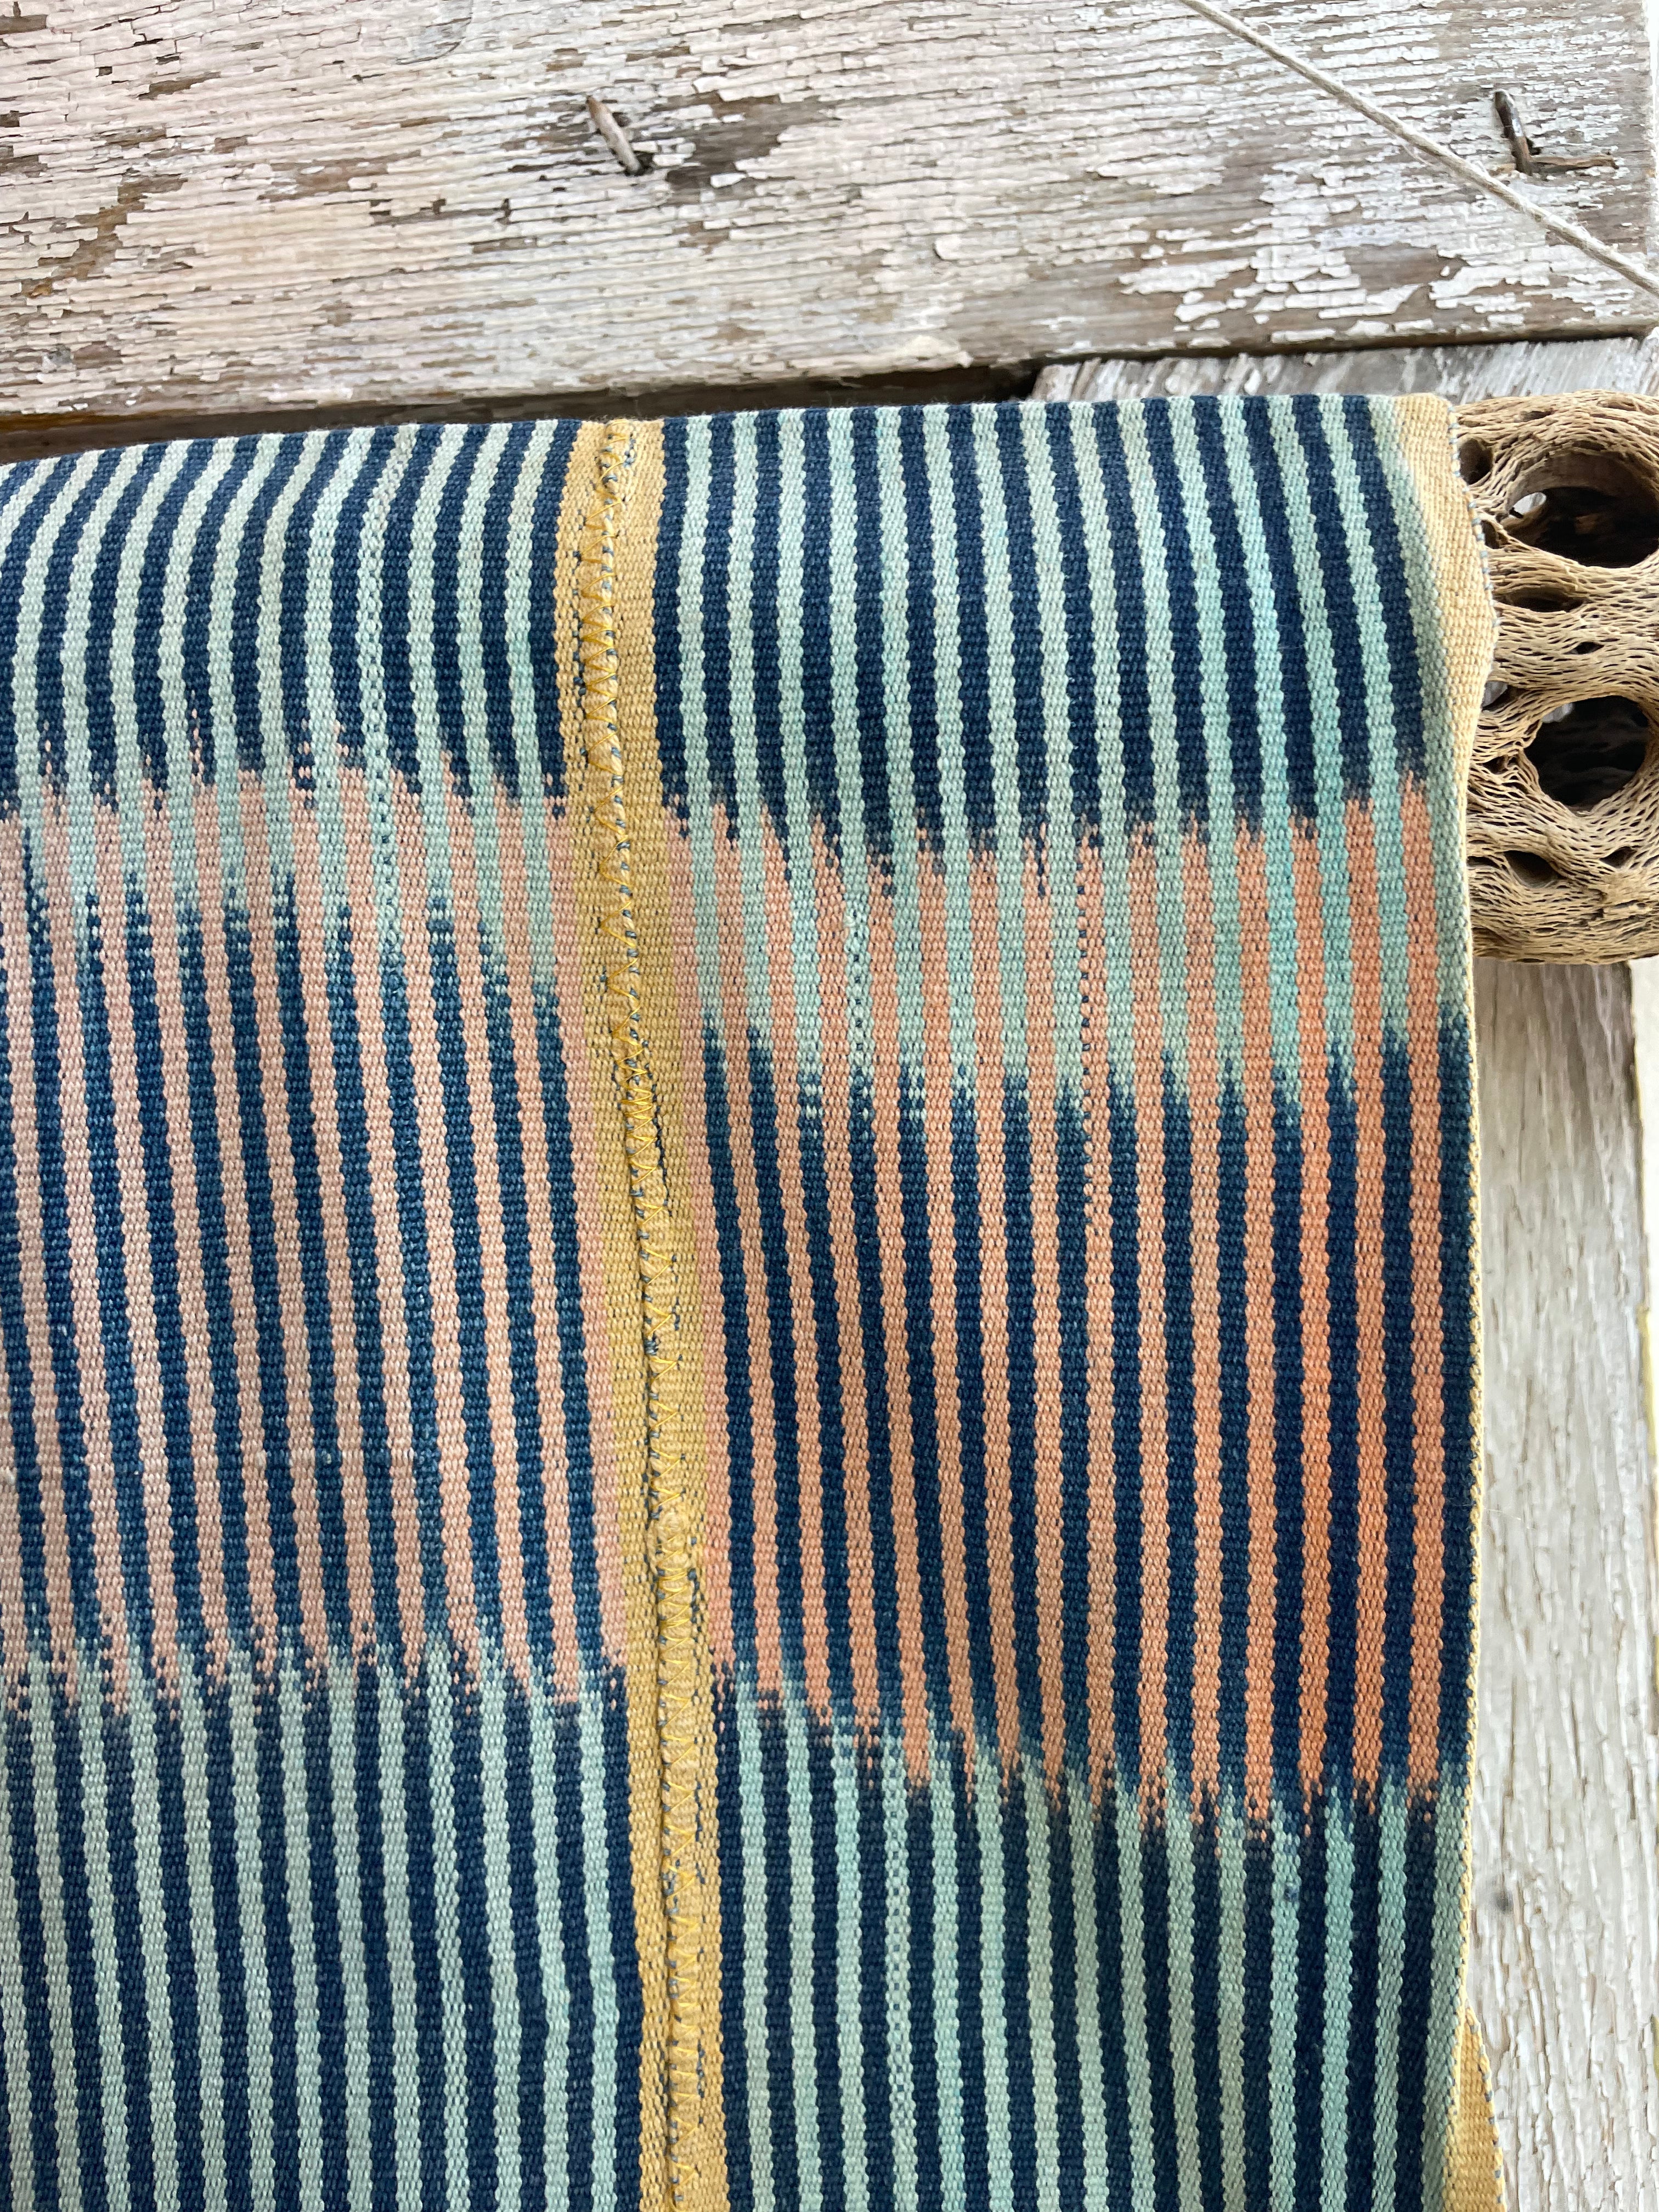 West African Baule Ikat Textile